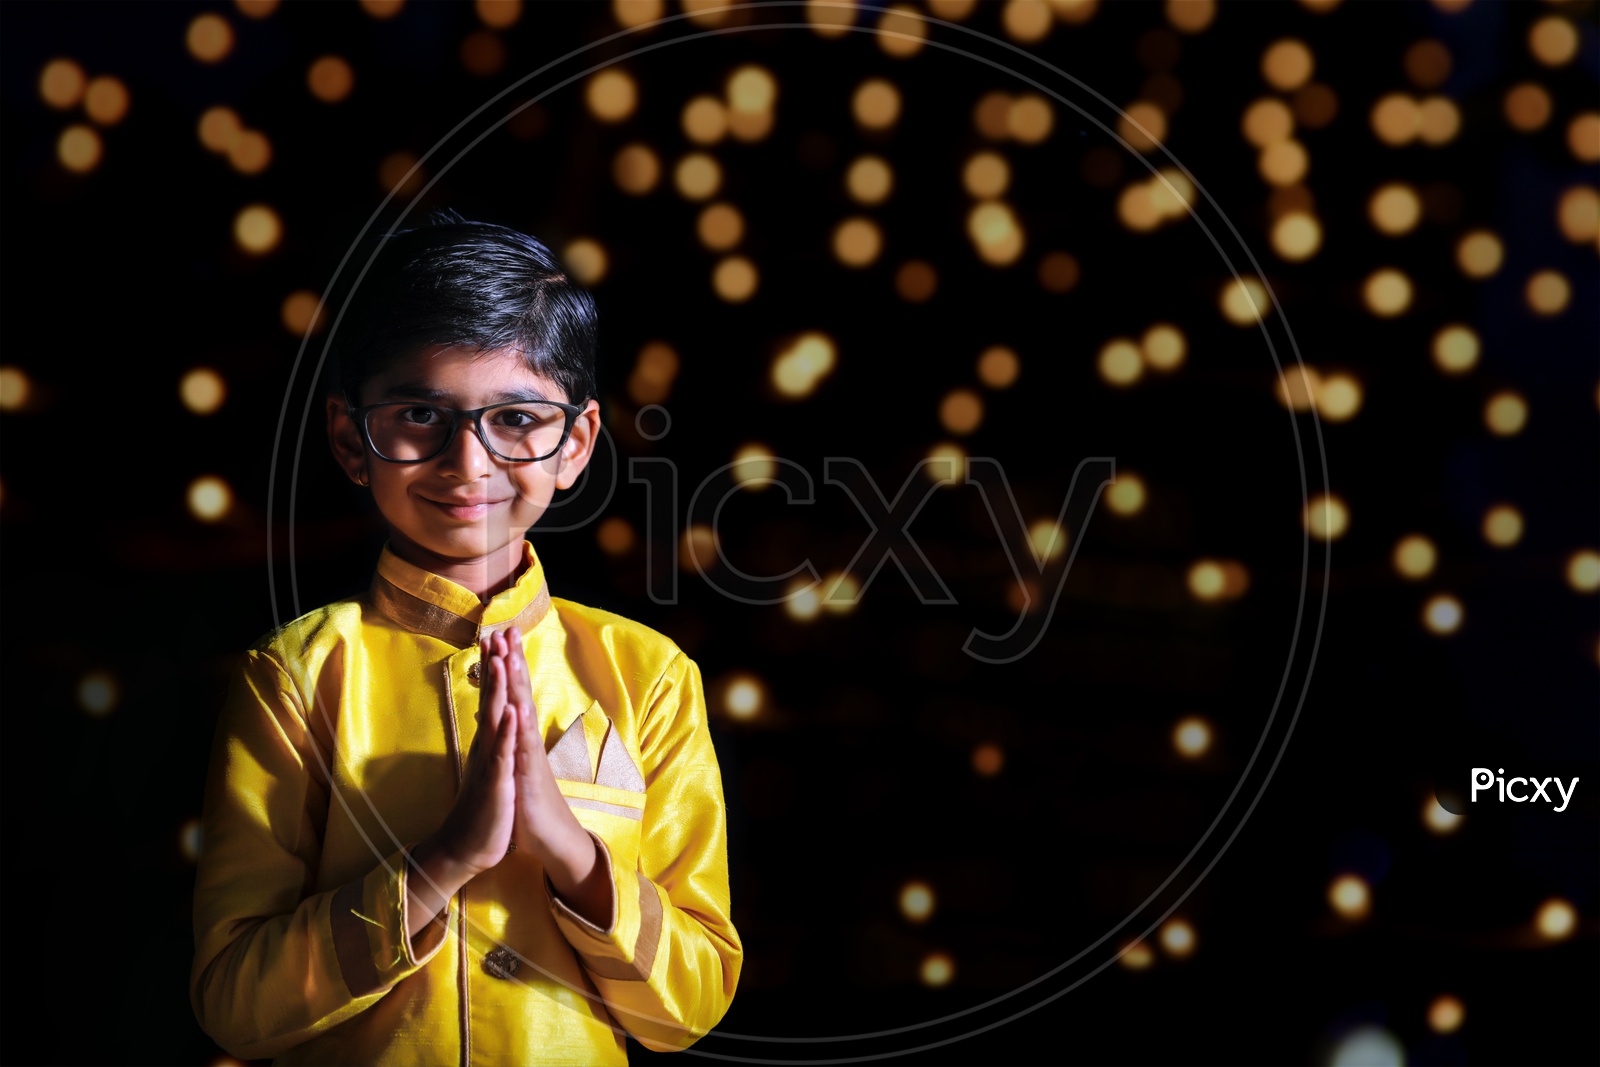 Diwali Poses Ideas For Boys | Diwali Photoshoot For Boys & Man - Niket  Creation - YouTube